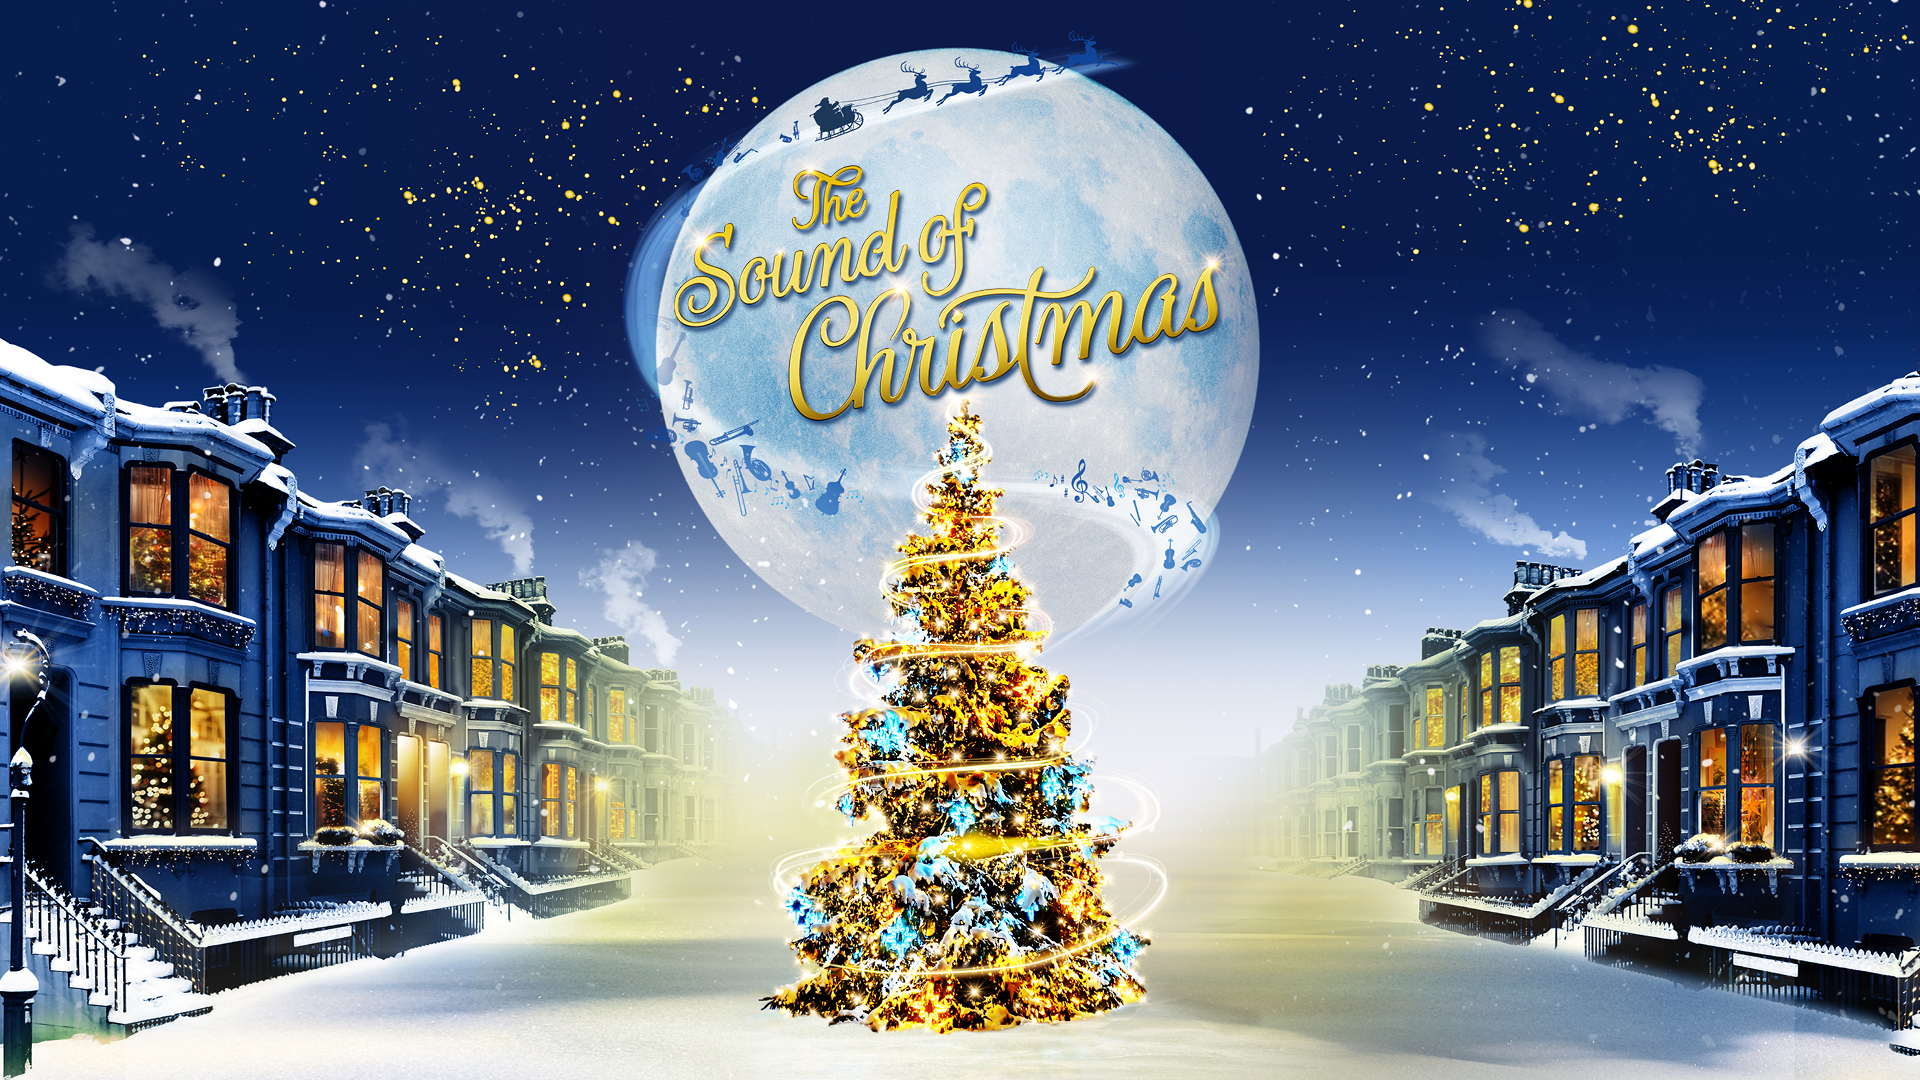 Ein leuchtender Weihnachtsbaum steht zwischen zwei Häuserreihen auf der Straße, im Hintergrund ist ein großer Vollmond am Himmel.